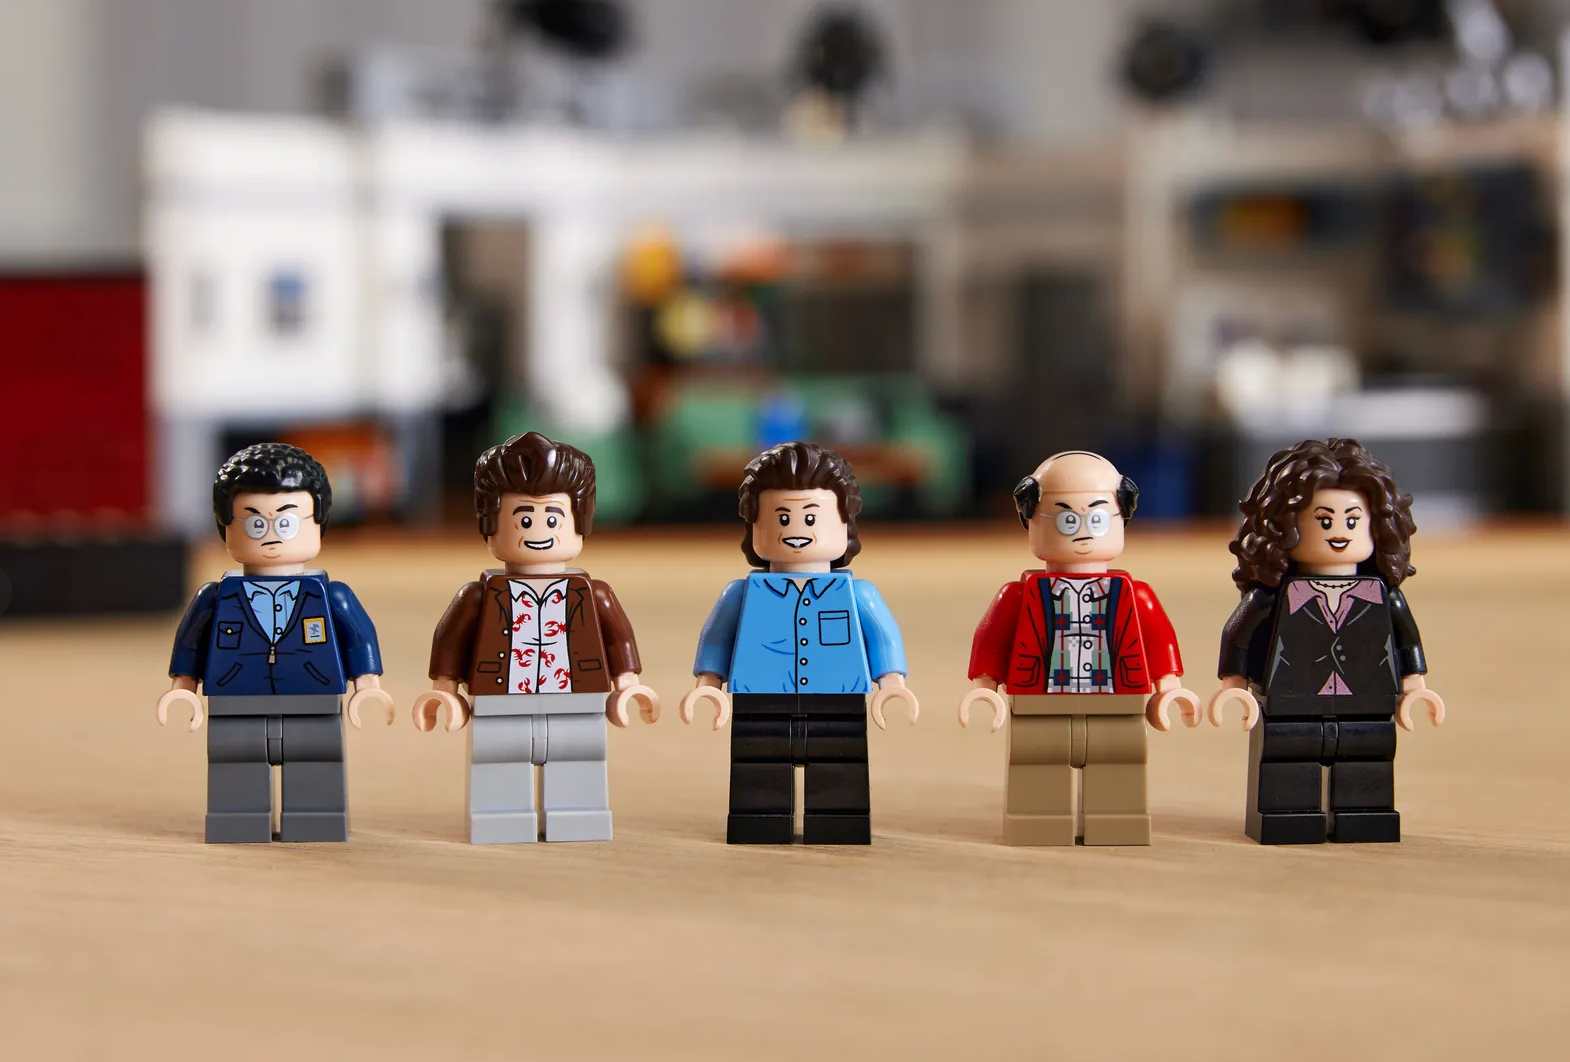 Tomen todo mi dinero: ¡LEGO lanzará un nuevo set de 'Seinfeld' para los fans true!